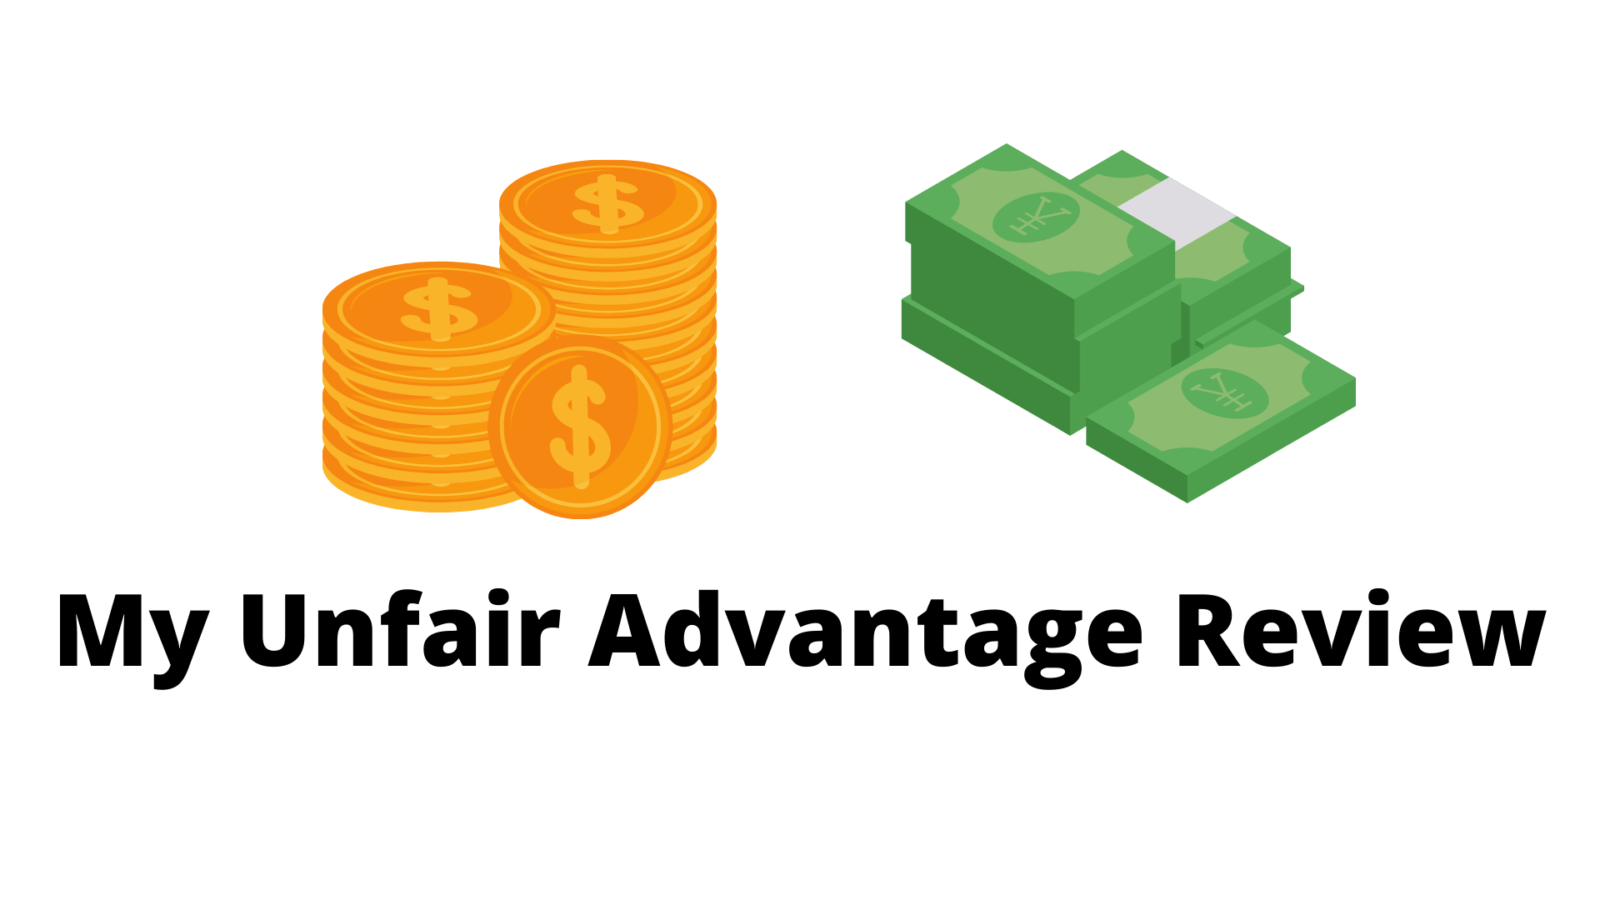 My Unfair Advantage Review